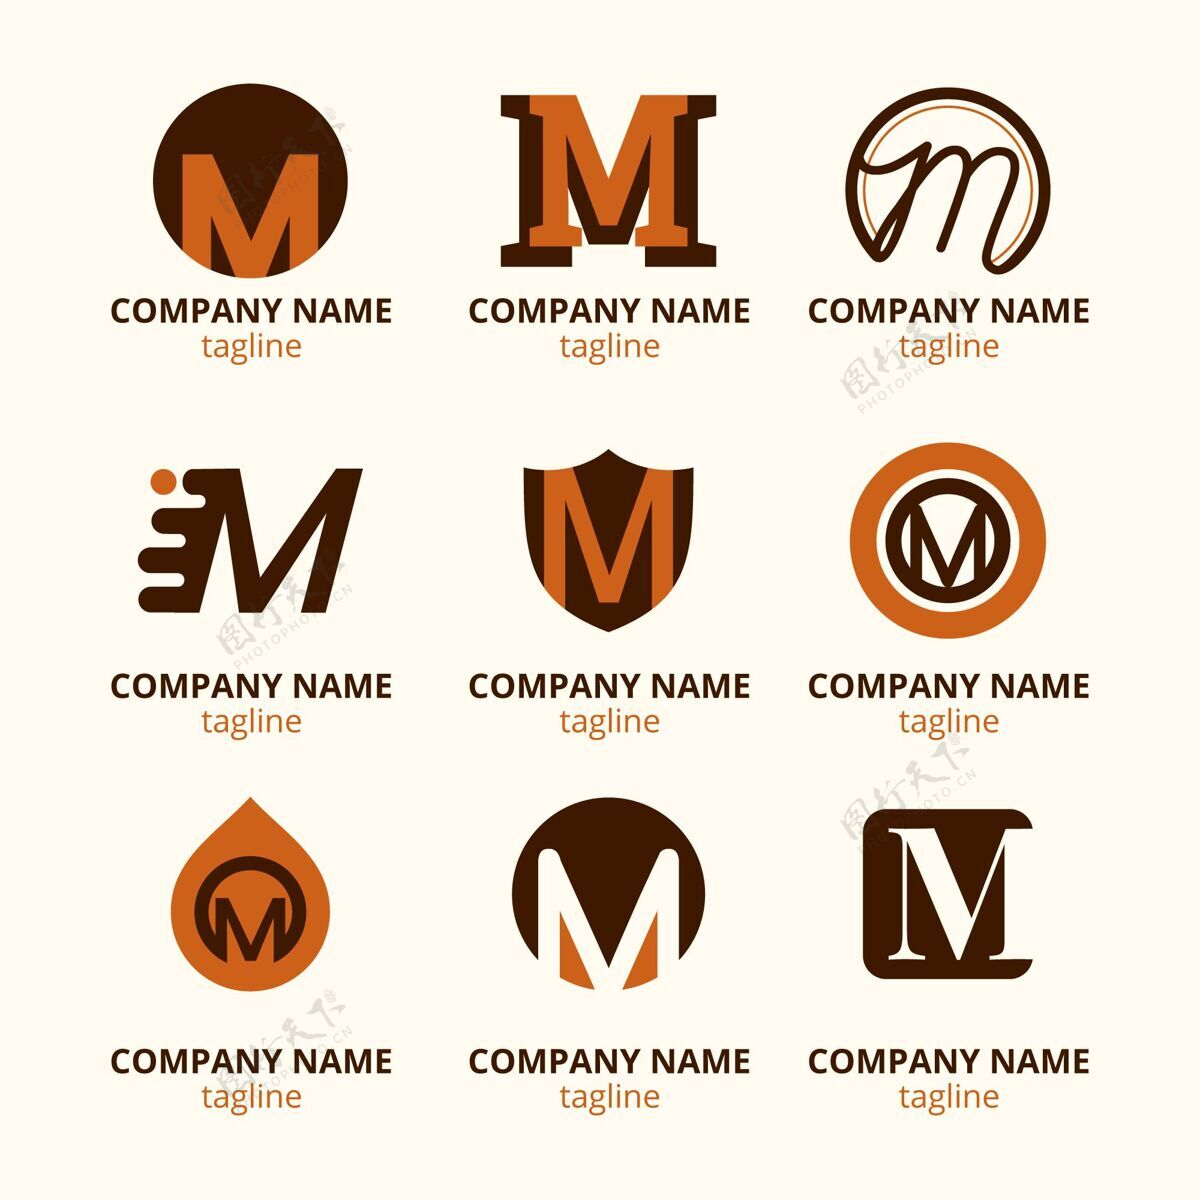 企业标识一套平面m标志模板M标志标志标志模板